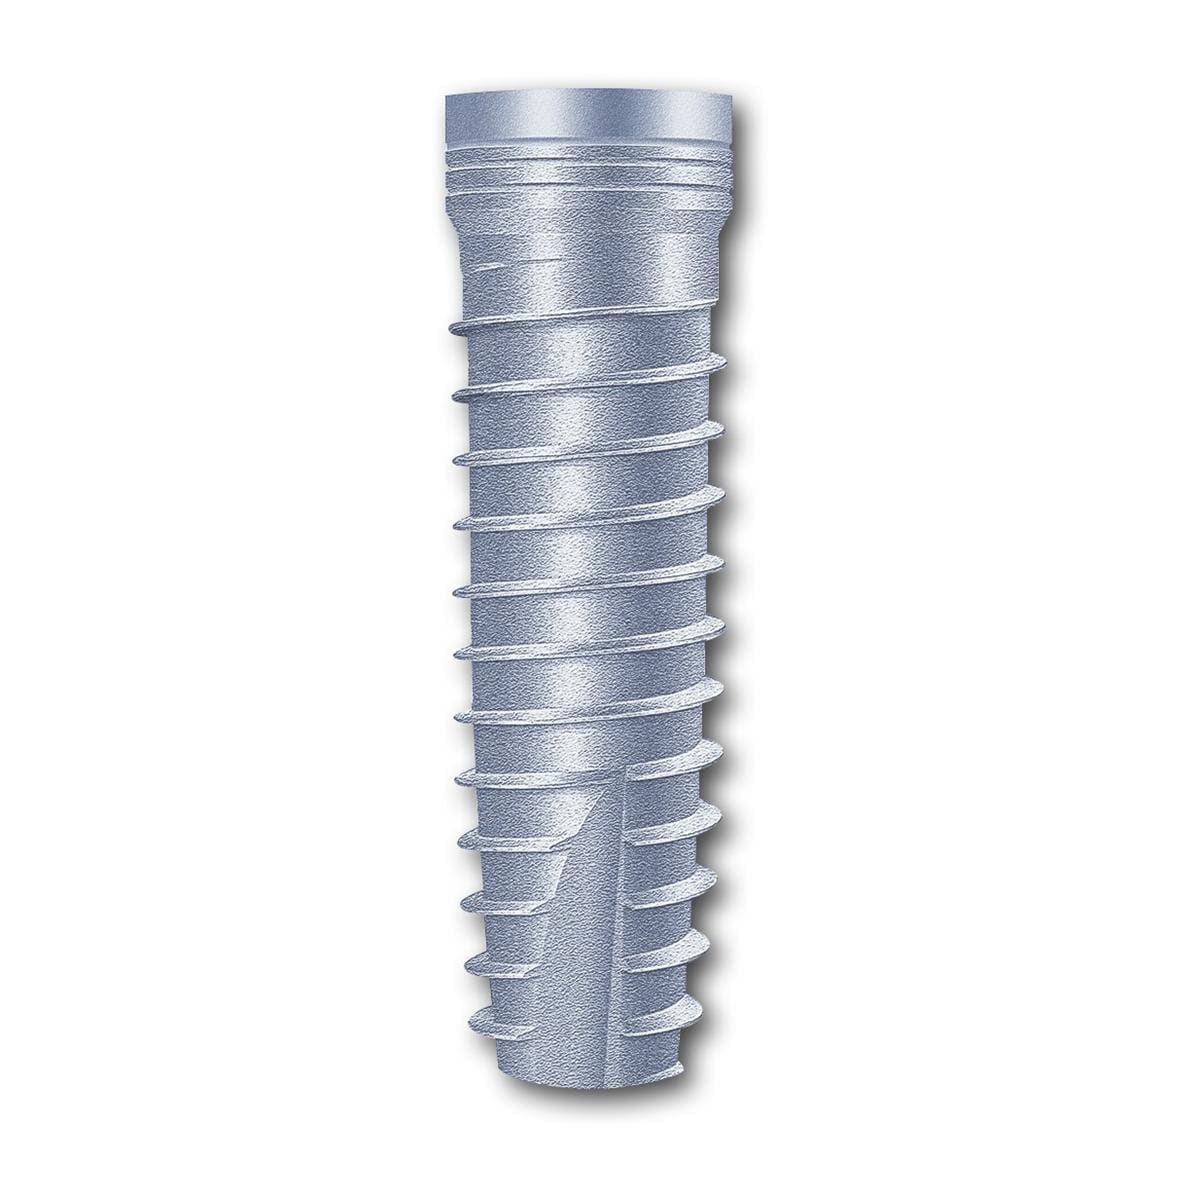 TL Implantat BONITex® Ø 3,4 mm - Länge 14 mm